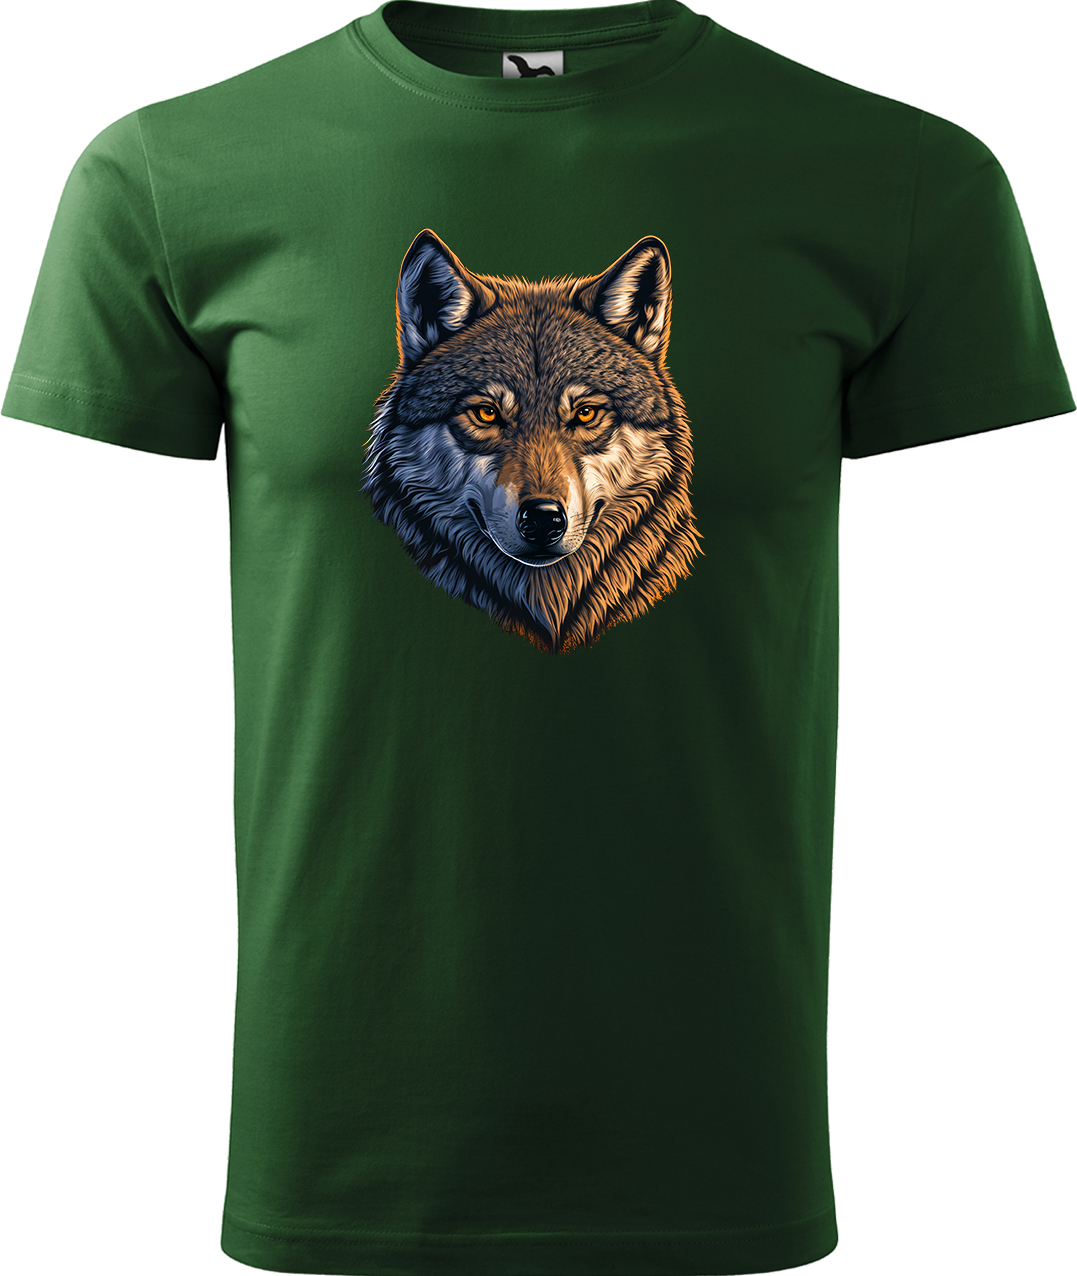 Pánské tričko s vlkem - Hlava vlka Velikost: XL, Barva: Lahvově zelená (06), Střih: pánský